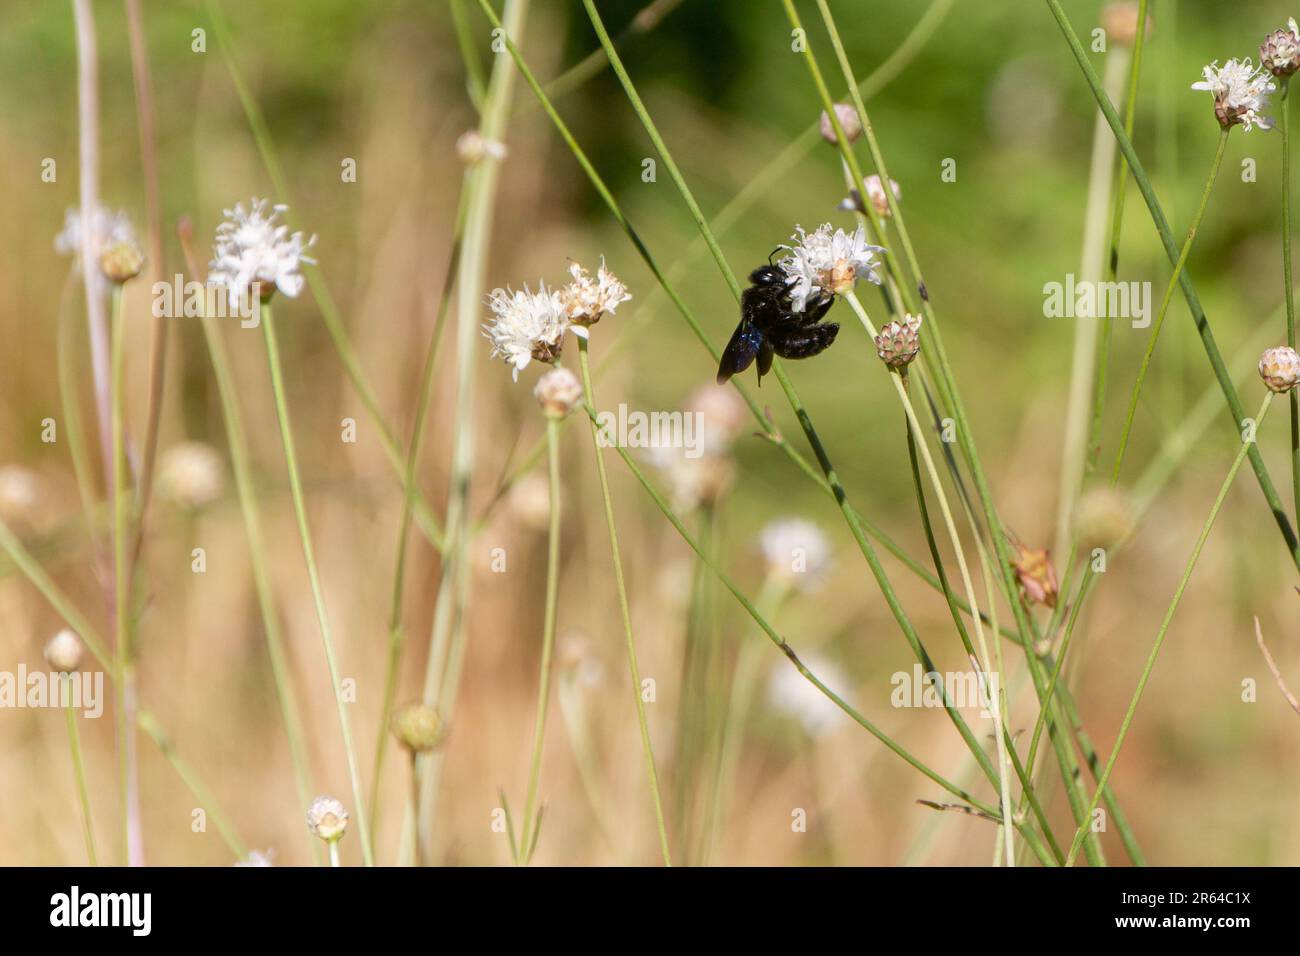 Schwarze Hummel auf kleiner weißer Blüte. Zarte Zusammensetzung mit gebogener Blüte durch Bienengewicht. Grüne und braune Farbtöne. Speicherplatz kopieren. Stockfoto